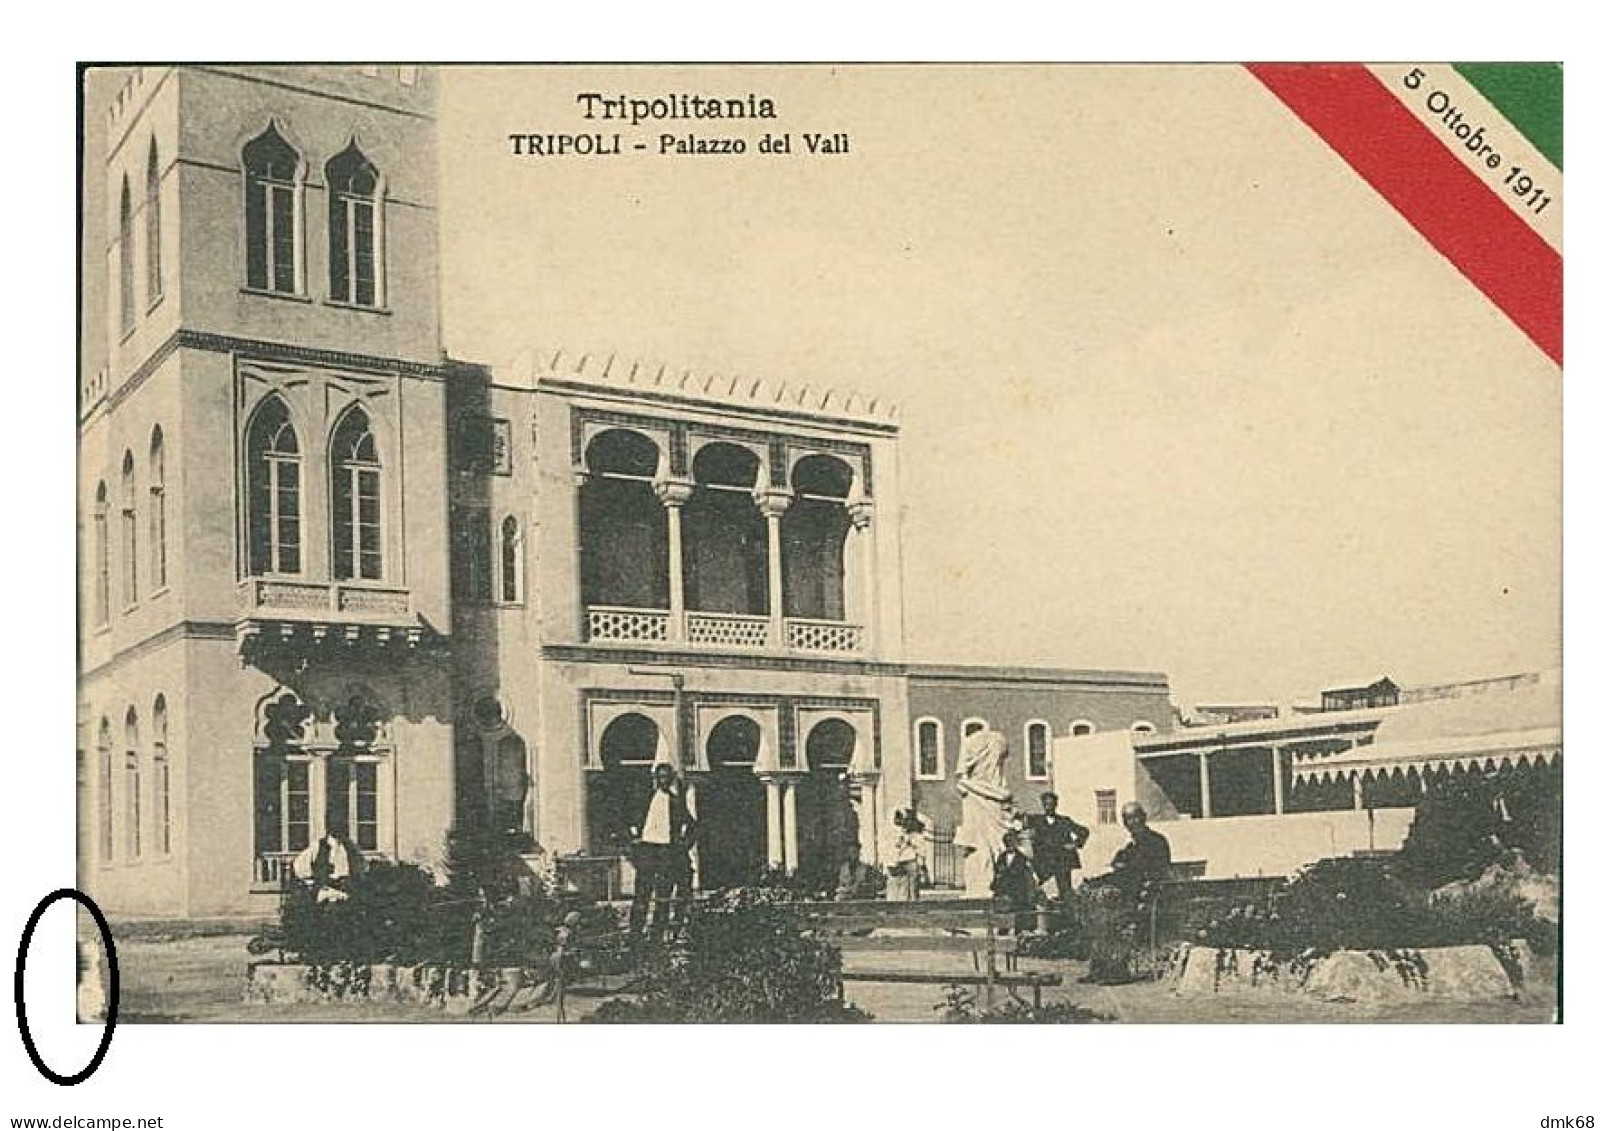 LIBIA / LIBYA - TRIPOLI - PALAZZO DEL VALI - EDIZIONE RAGOZINO - 1911 (12334) - Libia